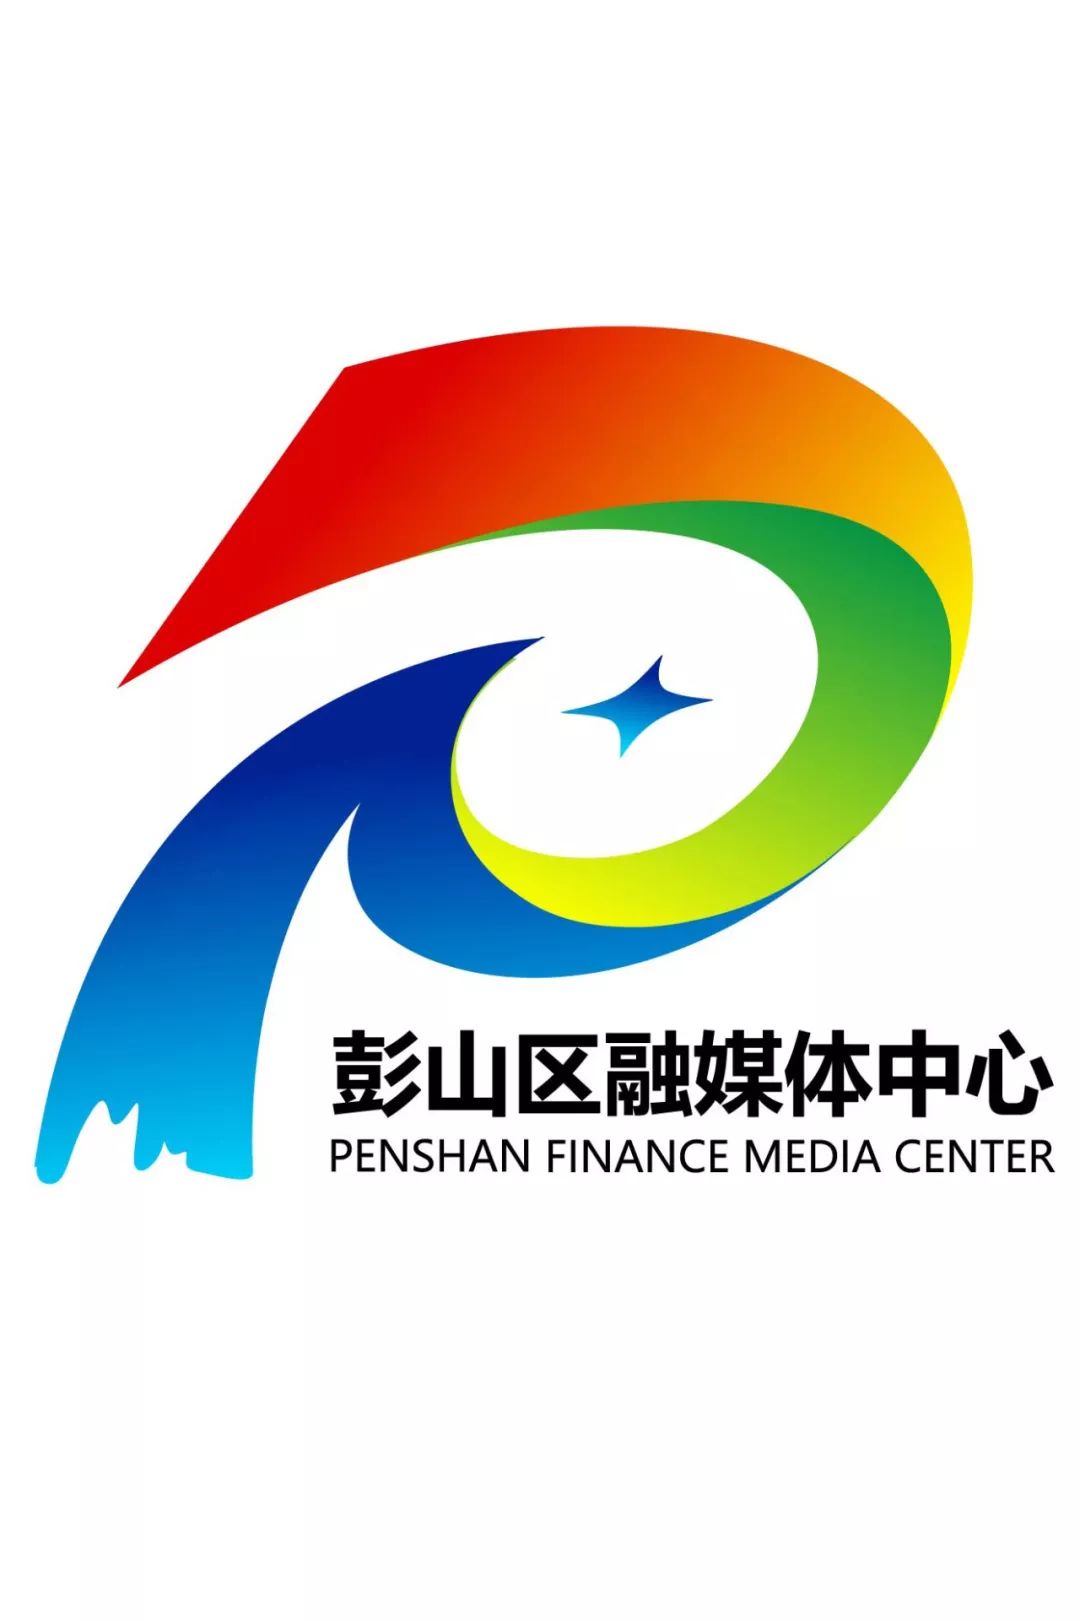 彭山区融媒体中心logo设计揭晓